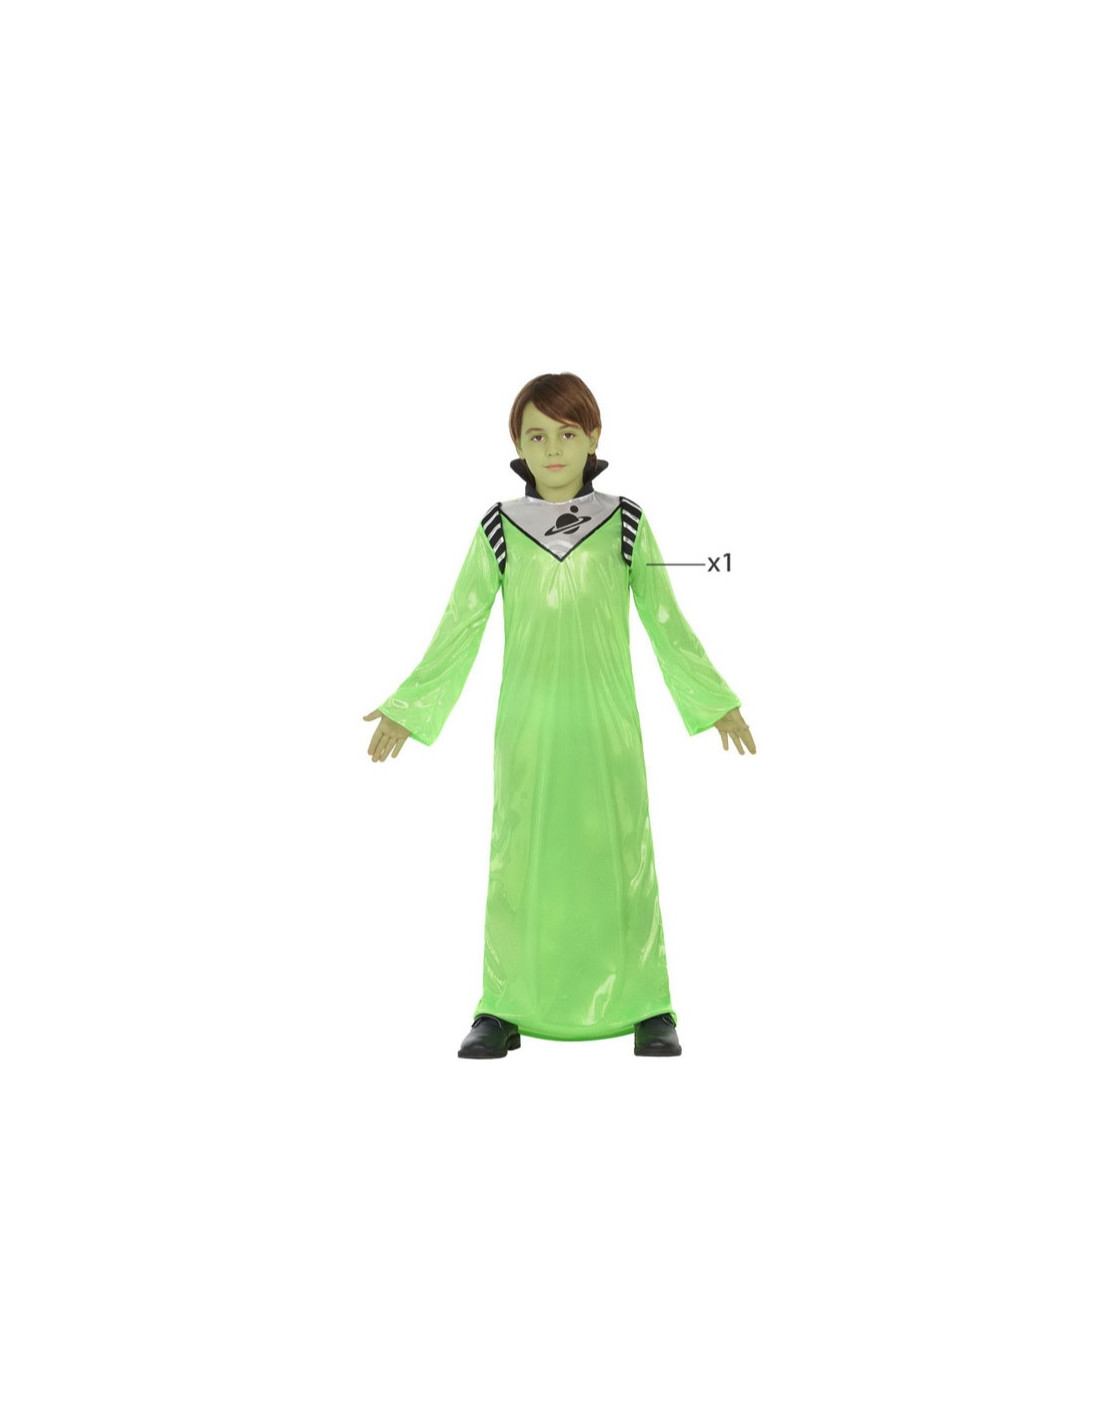 Disfraz alien verde para niño - Envío 24h